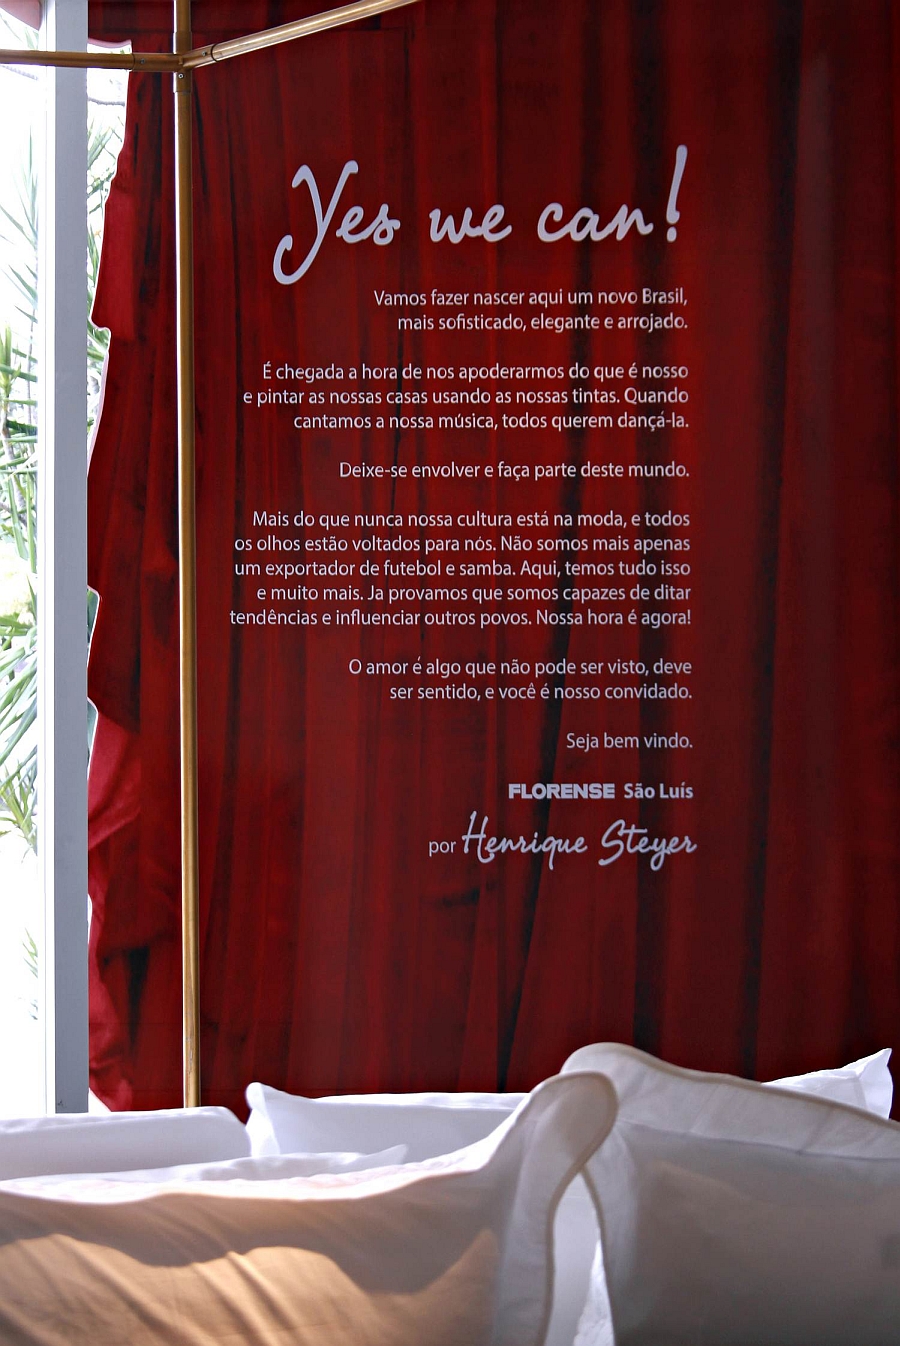 Stunning red velvet curtain graces the Florense Store